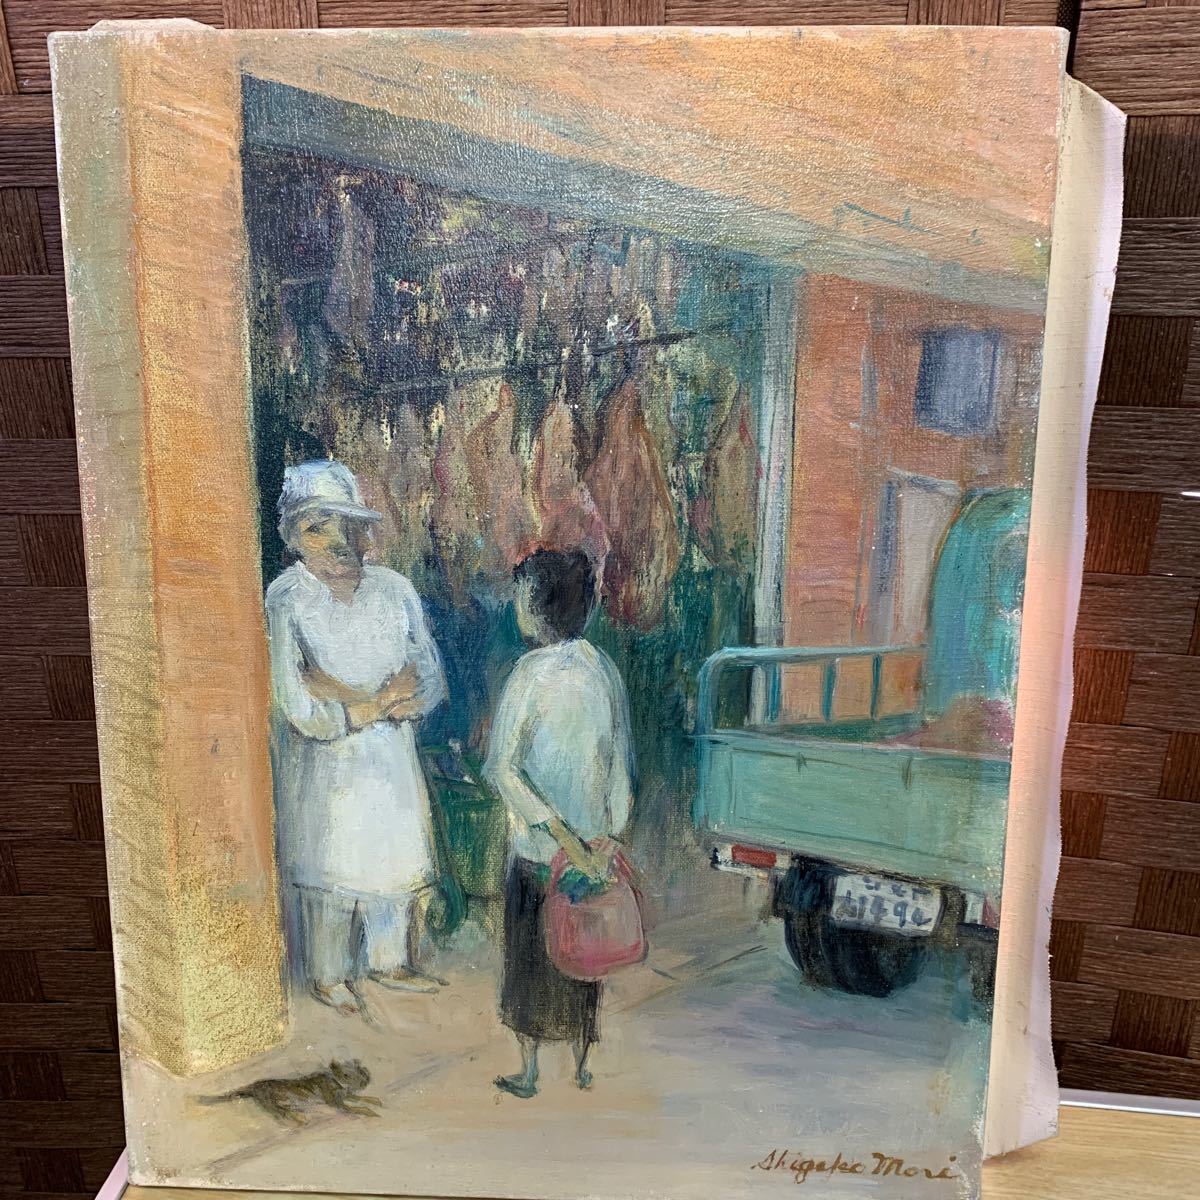 [असली] मोरी शिगेको टोर रोड ऑयल पेंटिंग नंबर 6 निककाई सदस्य एफ 6 ऑयल पेंटिंग हाथ से पेंट की गई लैंडस्केप पेंटिंग पोर्ट्रेट पेंटिंग आधुनिक कला कोबे, चित्रकारी, तैल चित्र, चित्र